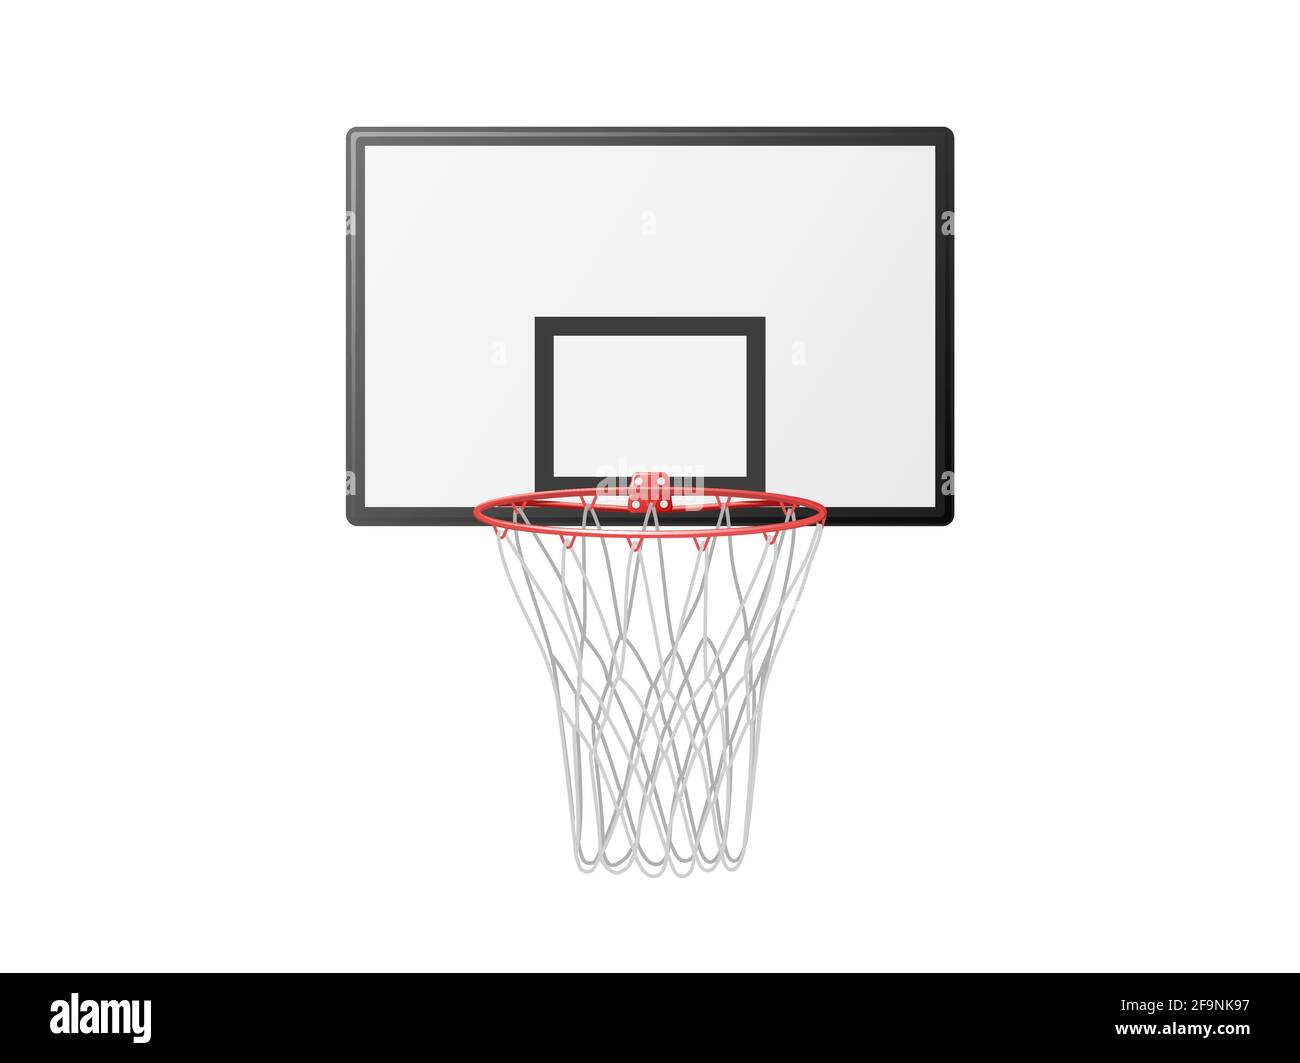 Basketballkorb auf Backboard Clipart. Wesentliches Element des aktiven  Spiels mit rotem Metallrahmen und weißem Netz hängen Stock-Vektorgrafik -  Alamy